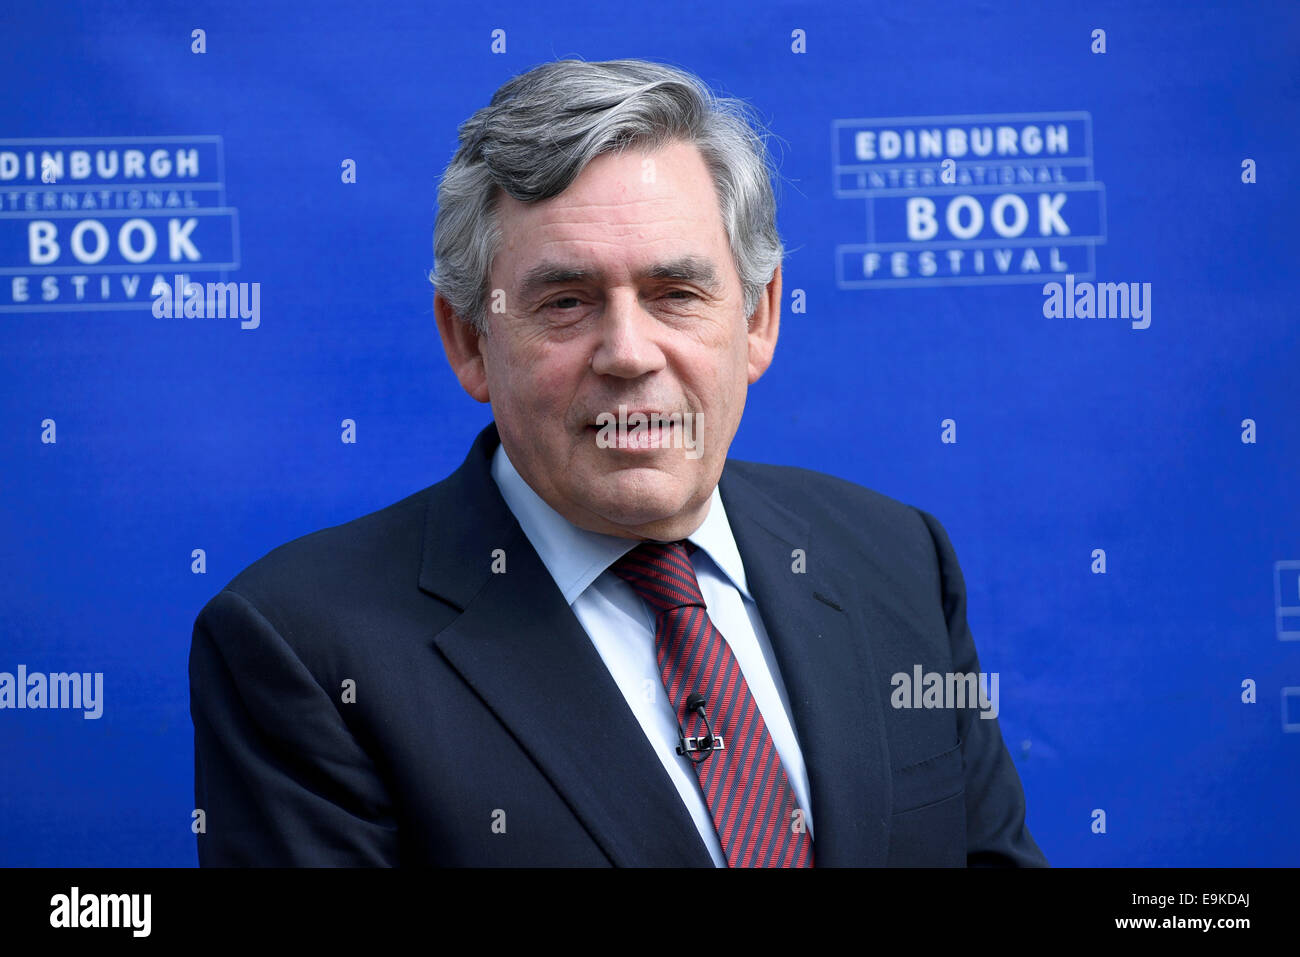 Former UK Prime Minister Mr. Gordon Brown appears at the Edinburgh International Book Festival. Stock Photo